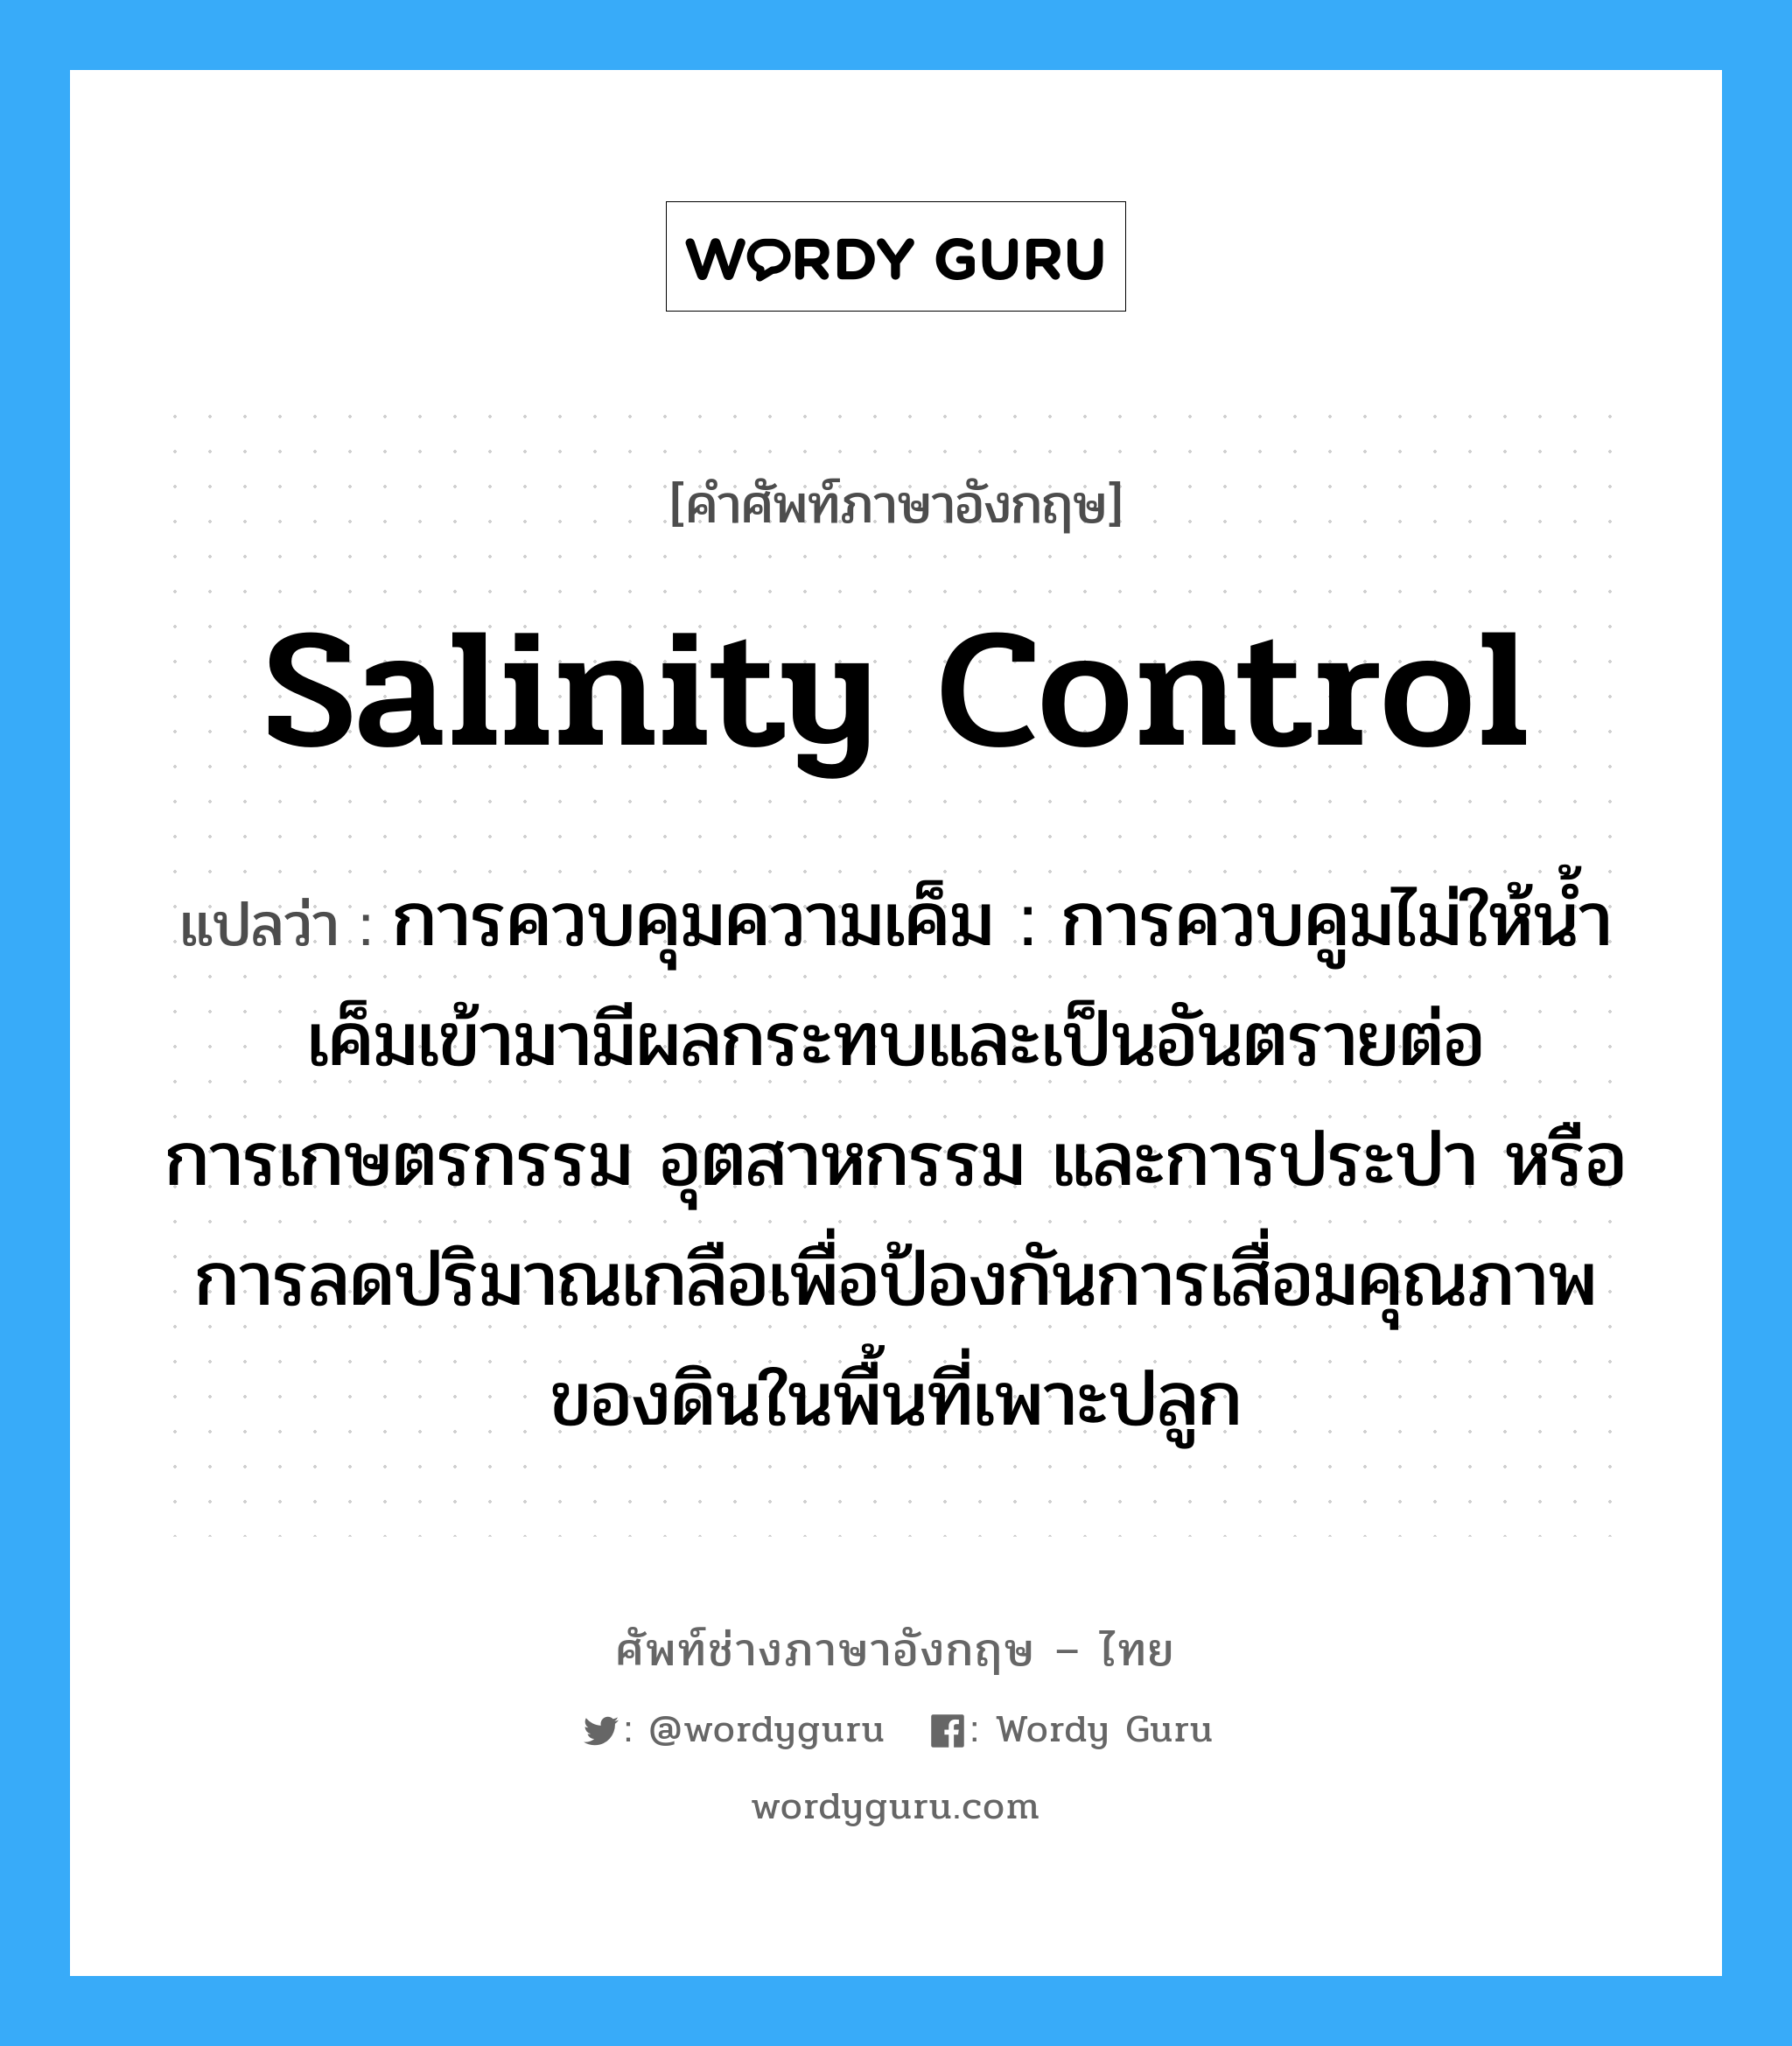 salinity control แปลว่า?, คำศัพท์ช่างภาษาอังกฤษ - ไทย salinity control คำศัพท์ภาษาอังกฤษ salinity control แปลว่า การควบคุมความเค็ม : การควบคูมไม่ให้น้ำเค็มเข้ามามีผลกระทบและเป็นอันตรายต่อการเกษตรกรรม อุตสาหกรรม และการประปา หรือการลดปริมาณเกลือเพื่อป้องกันการเสื่อมคุณภาพของดินในพื้นที่เพาะปลูก